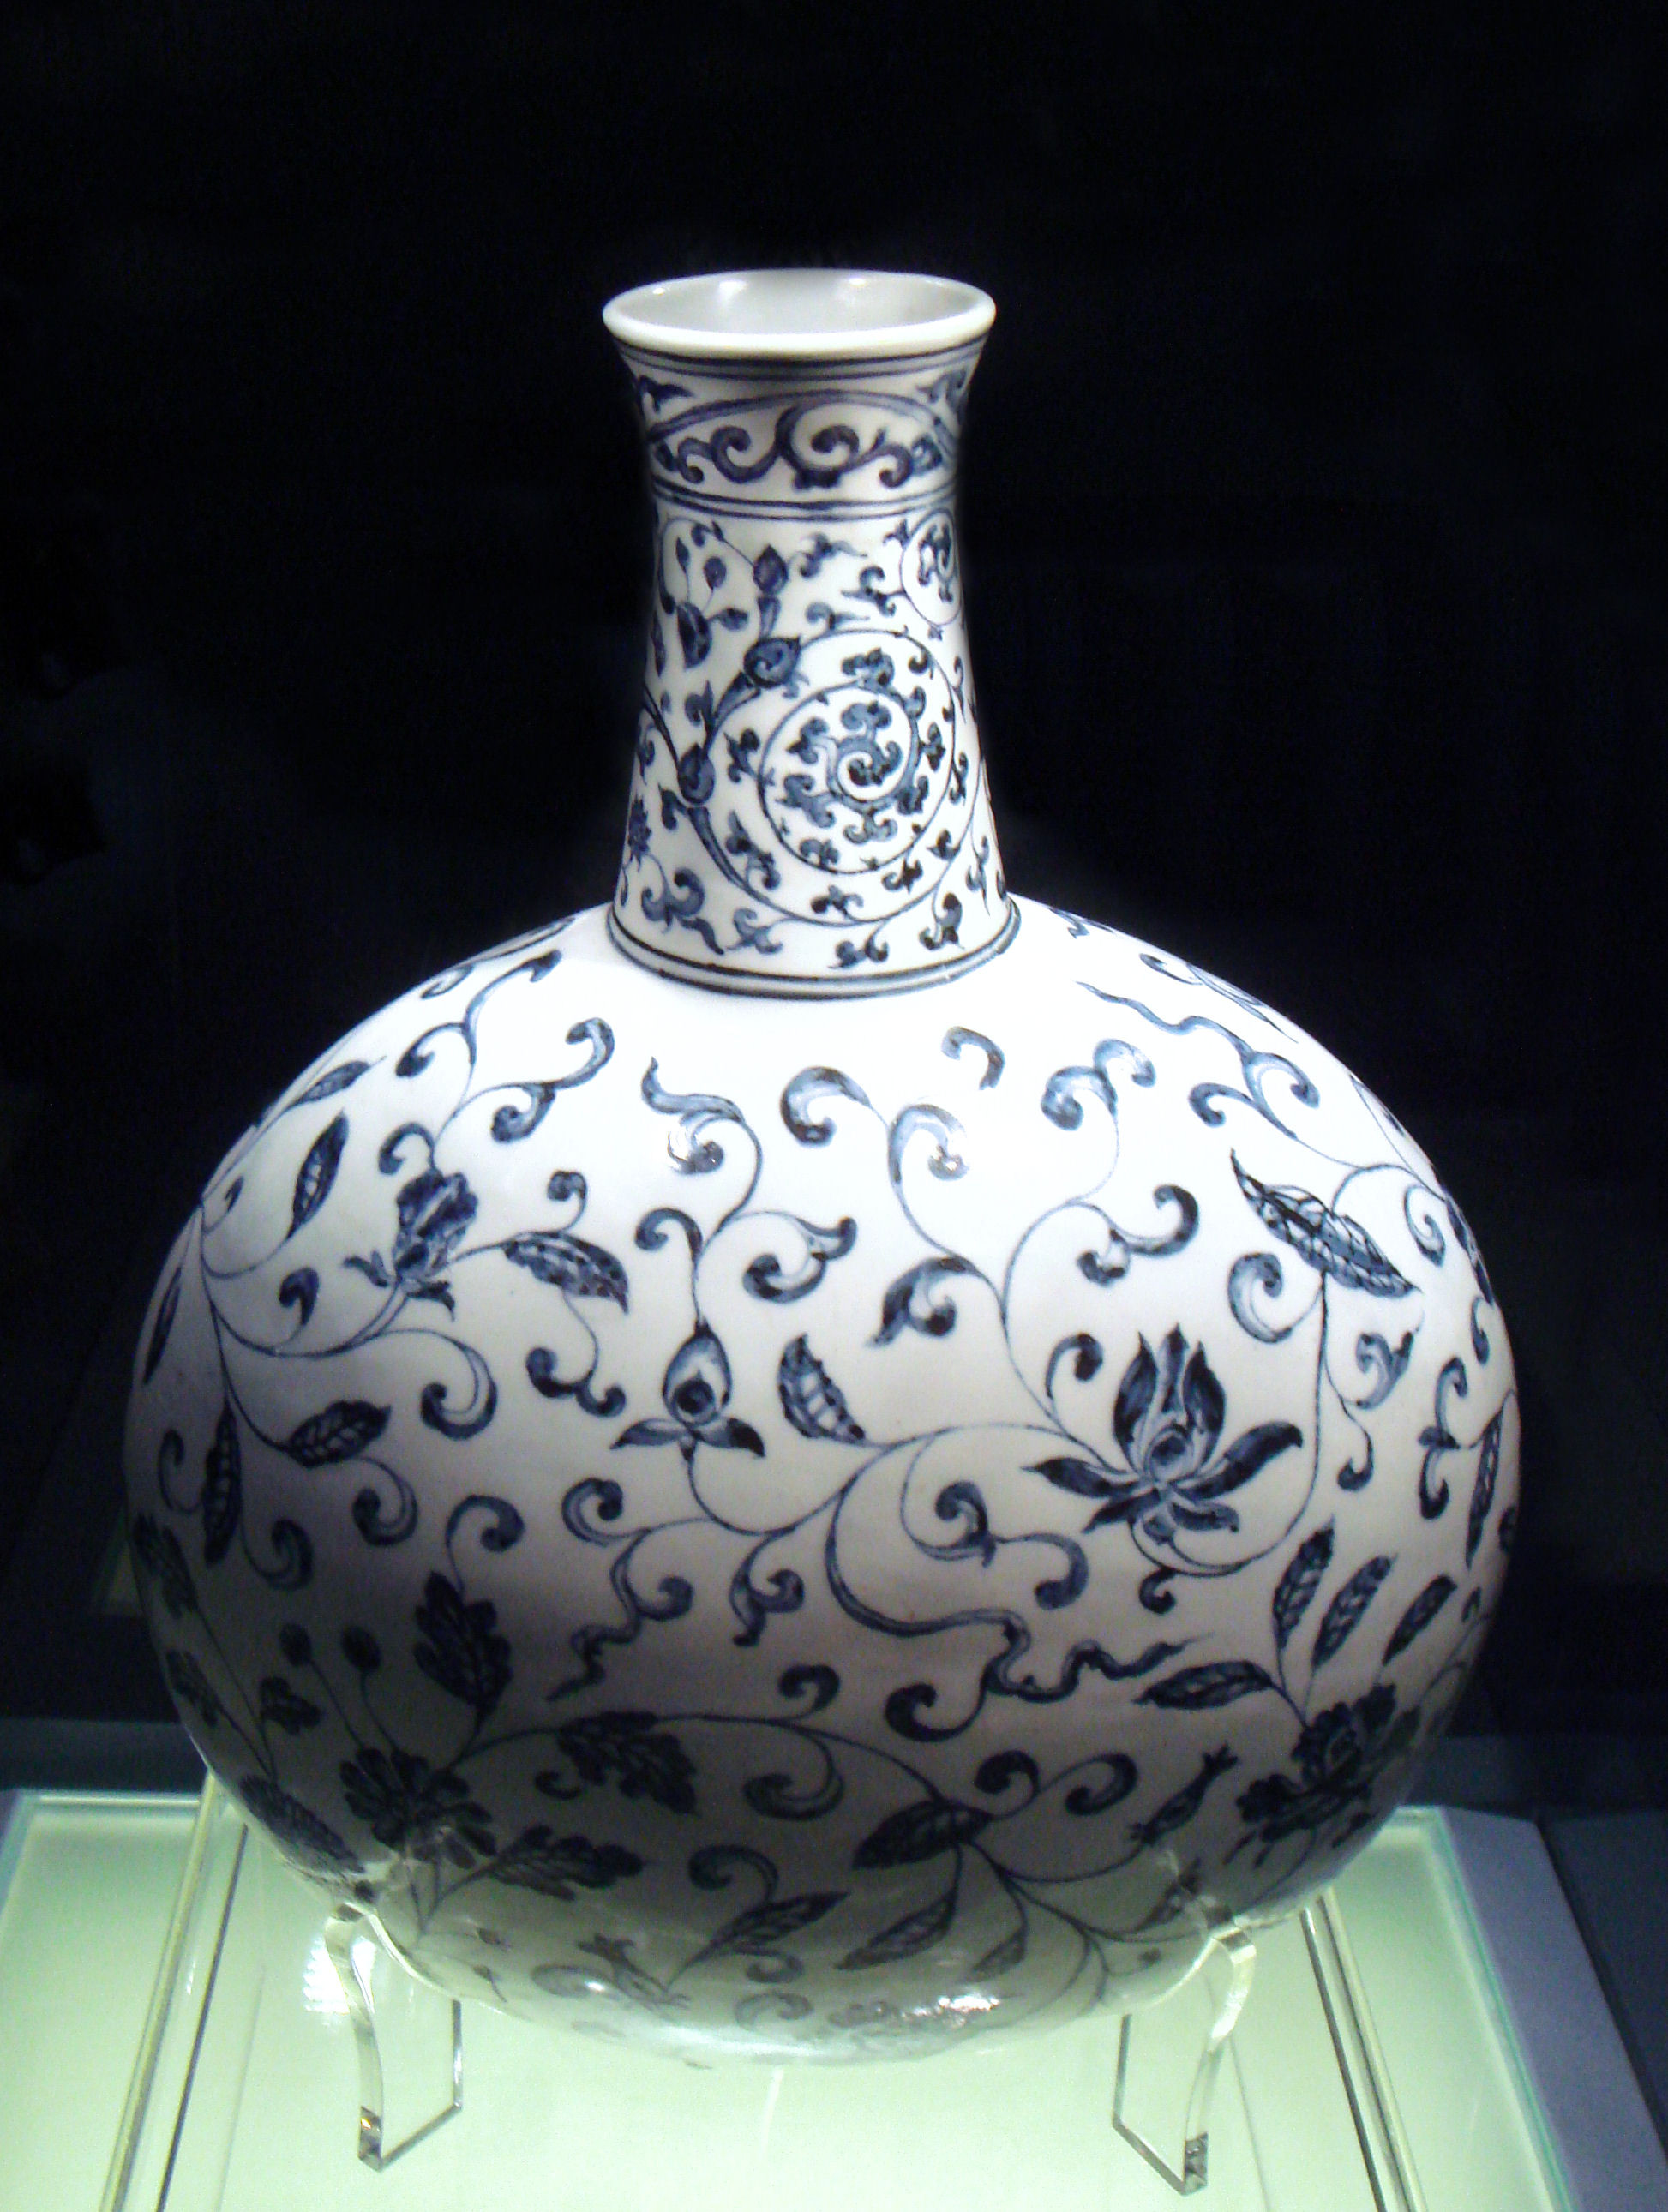 21 Stunning White Ceramic Head Vase 2024 free download white ceramic head vase of fileblue and white vase jingdezhen ming yongle 1403 1424 throughout fileblue and white vase jingdezhen ming yongle 1403 1424